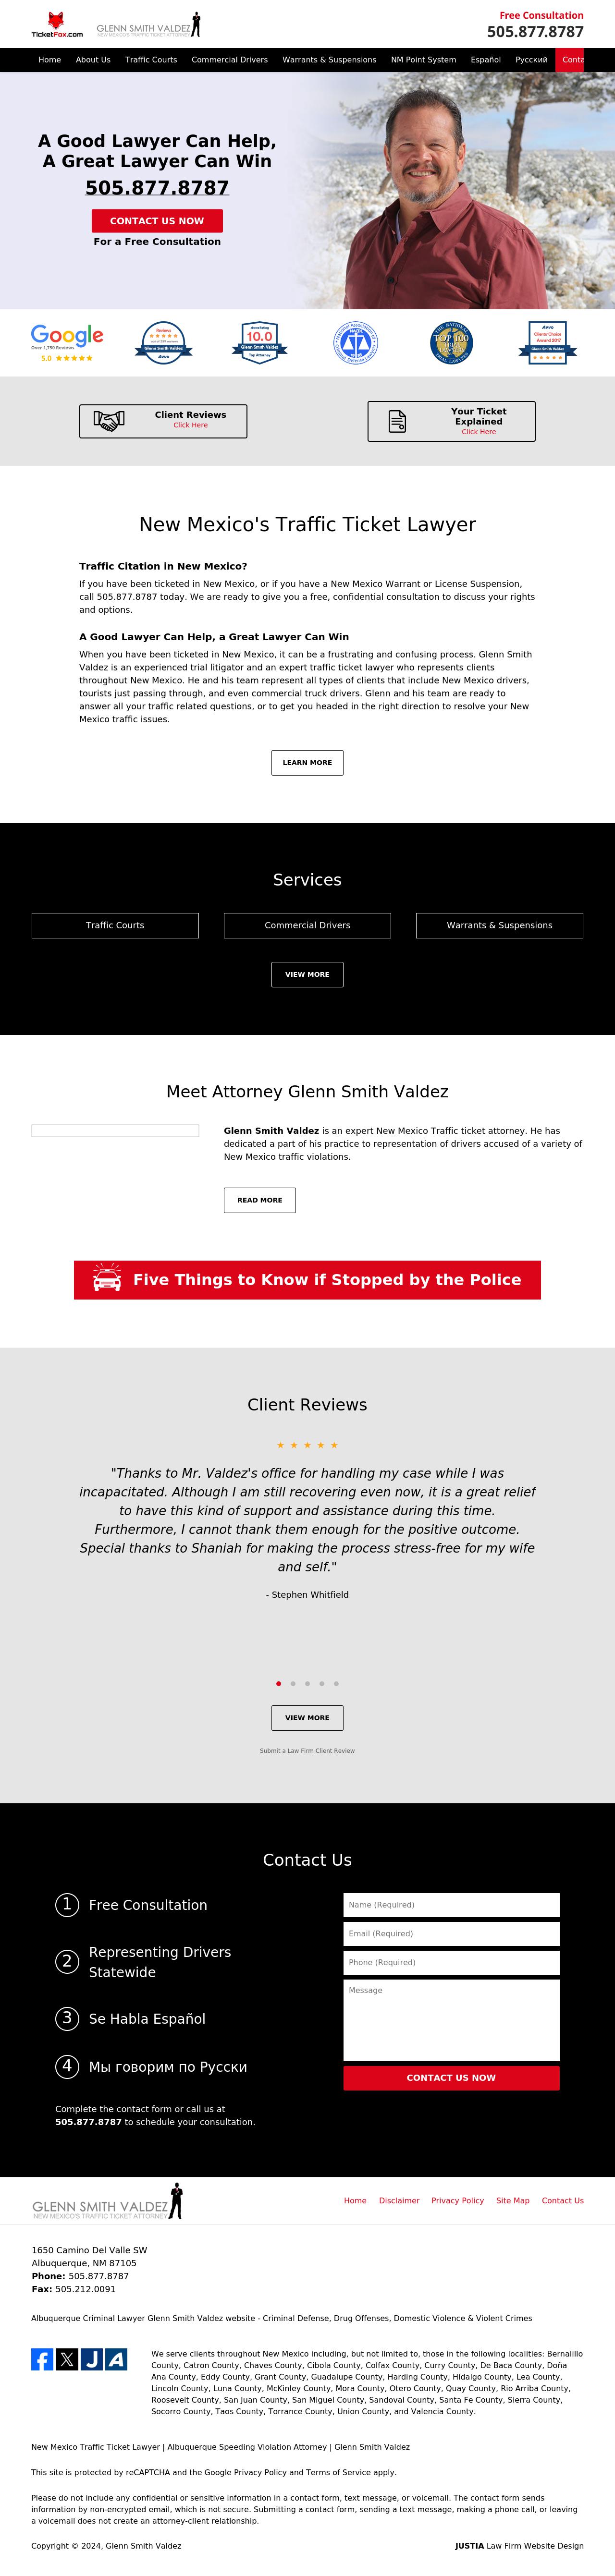 Glenn Smith Valdez - Albuquerque NM Lawyers